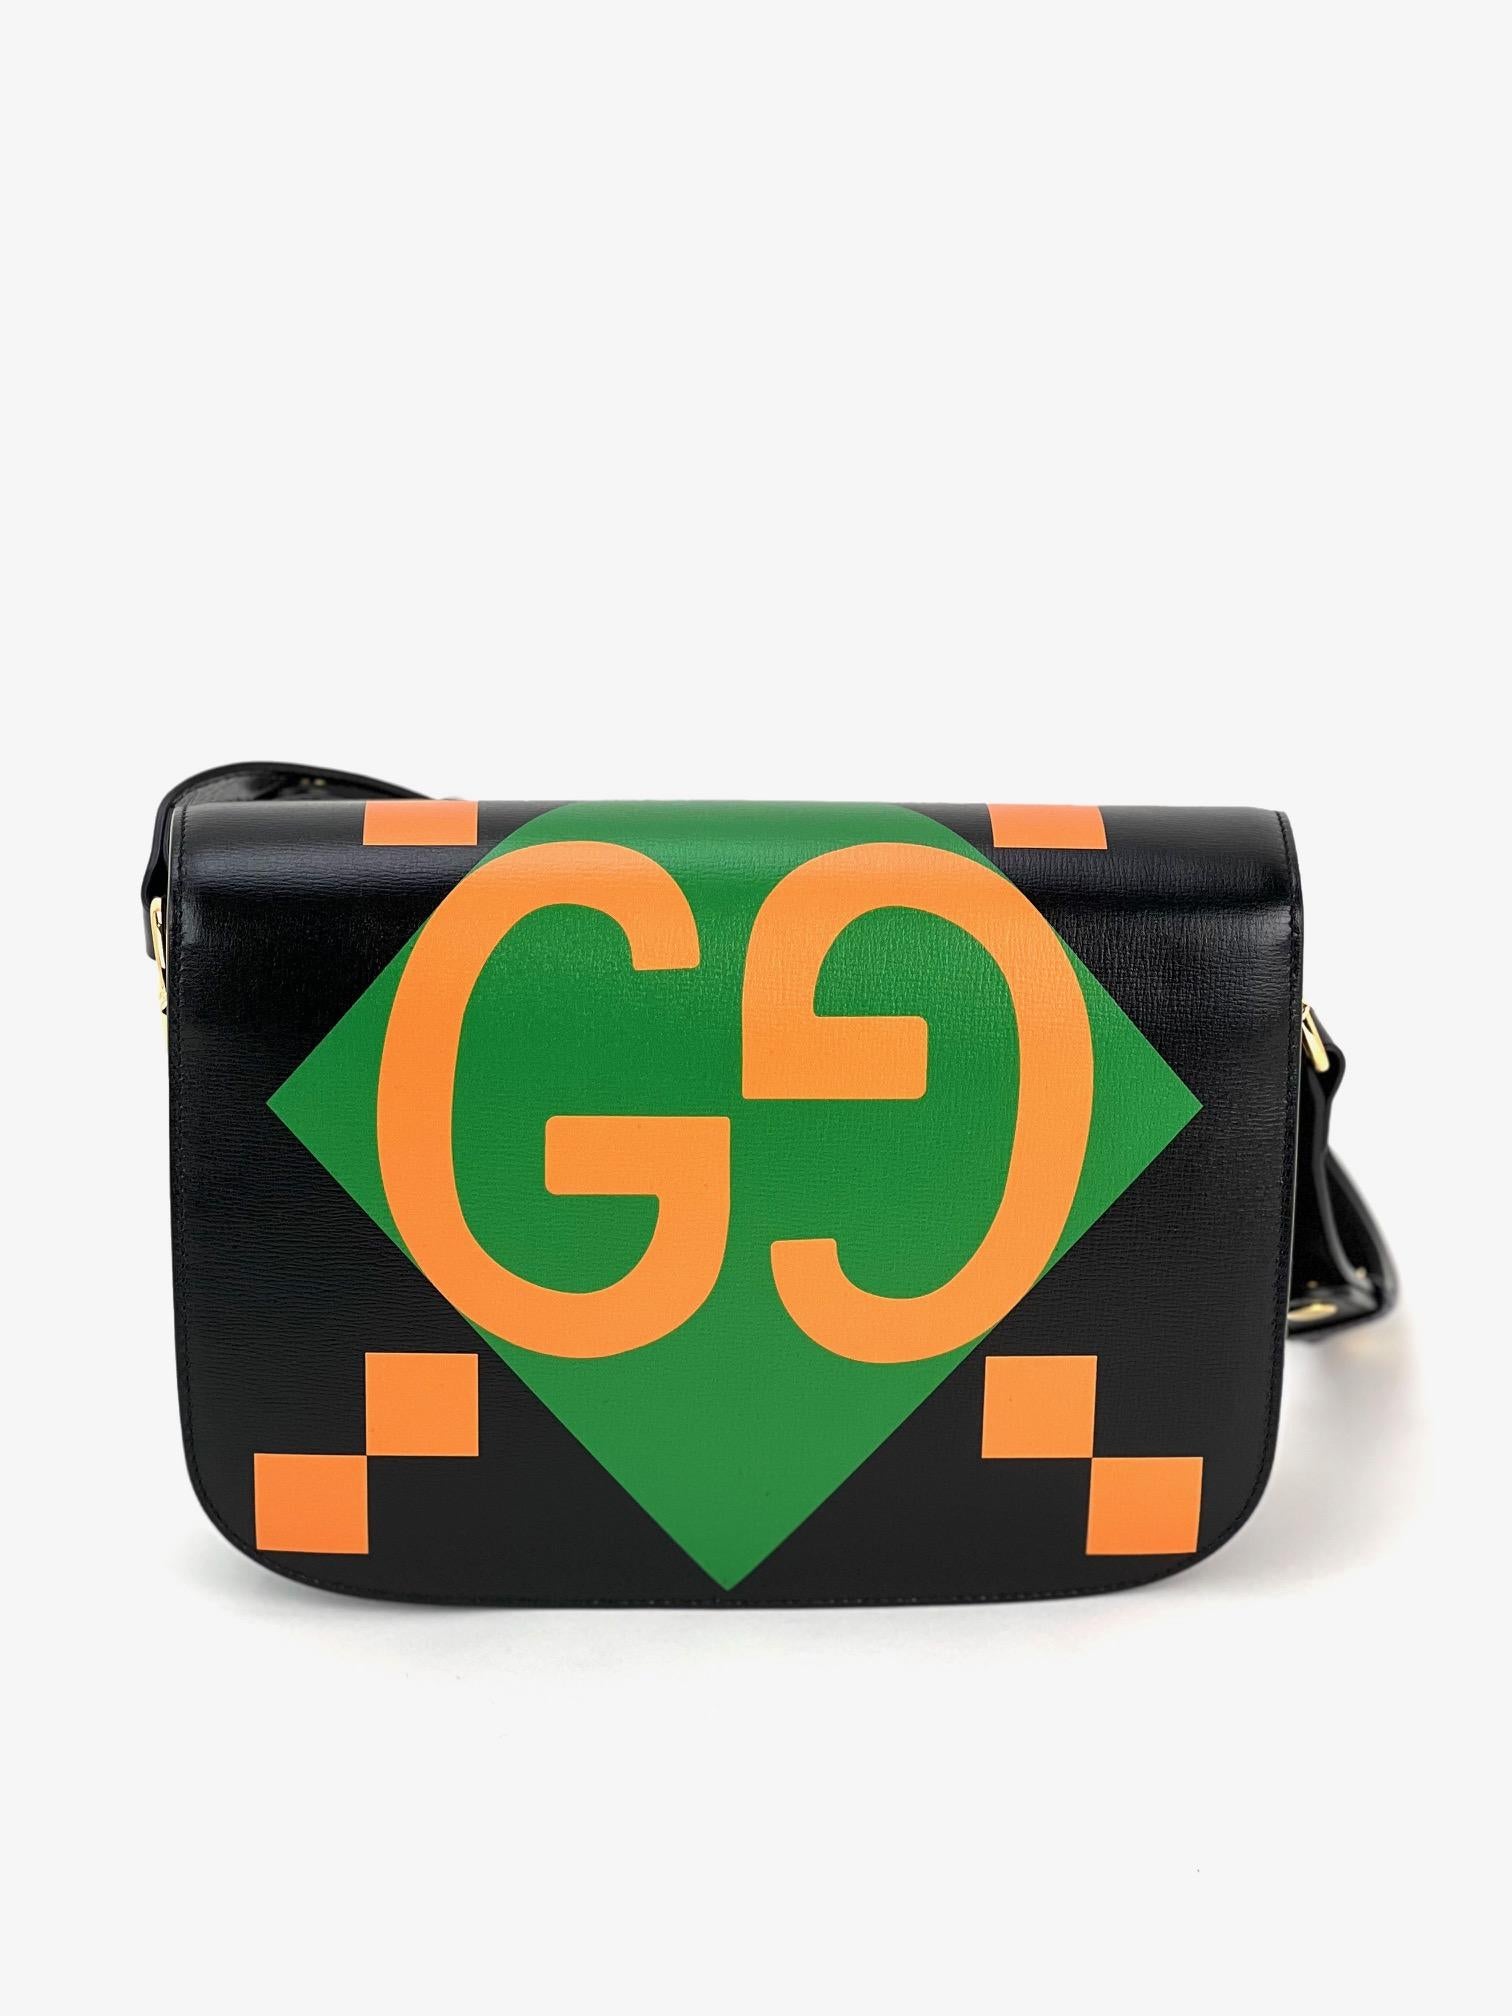 Gucci Textured Calfskin Horsebit 1955  Black Multicolor Shoulder Bag For Sale 1